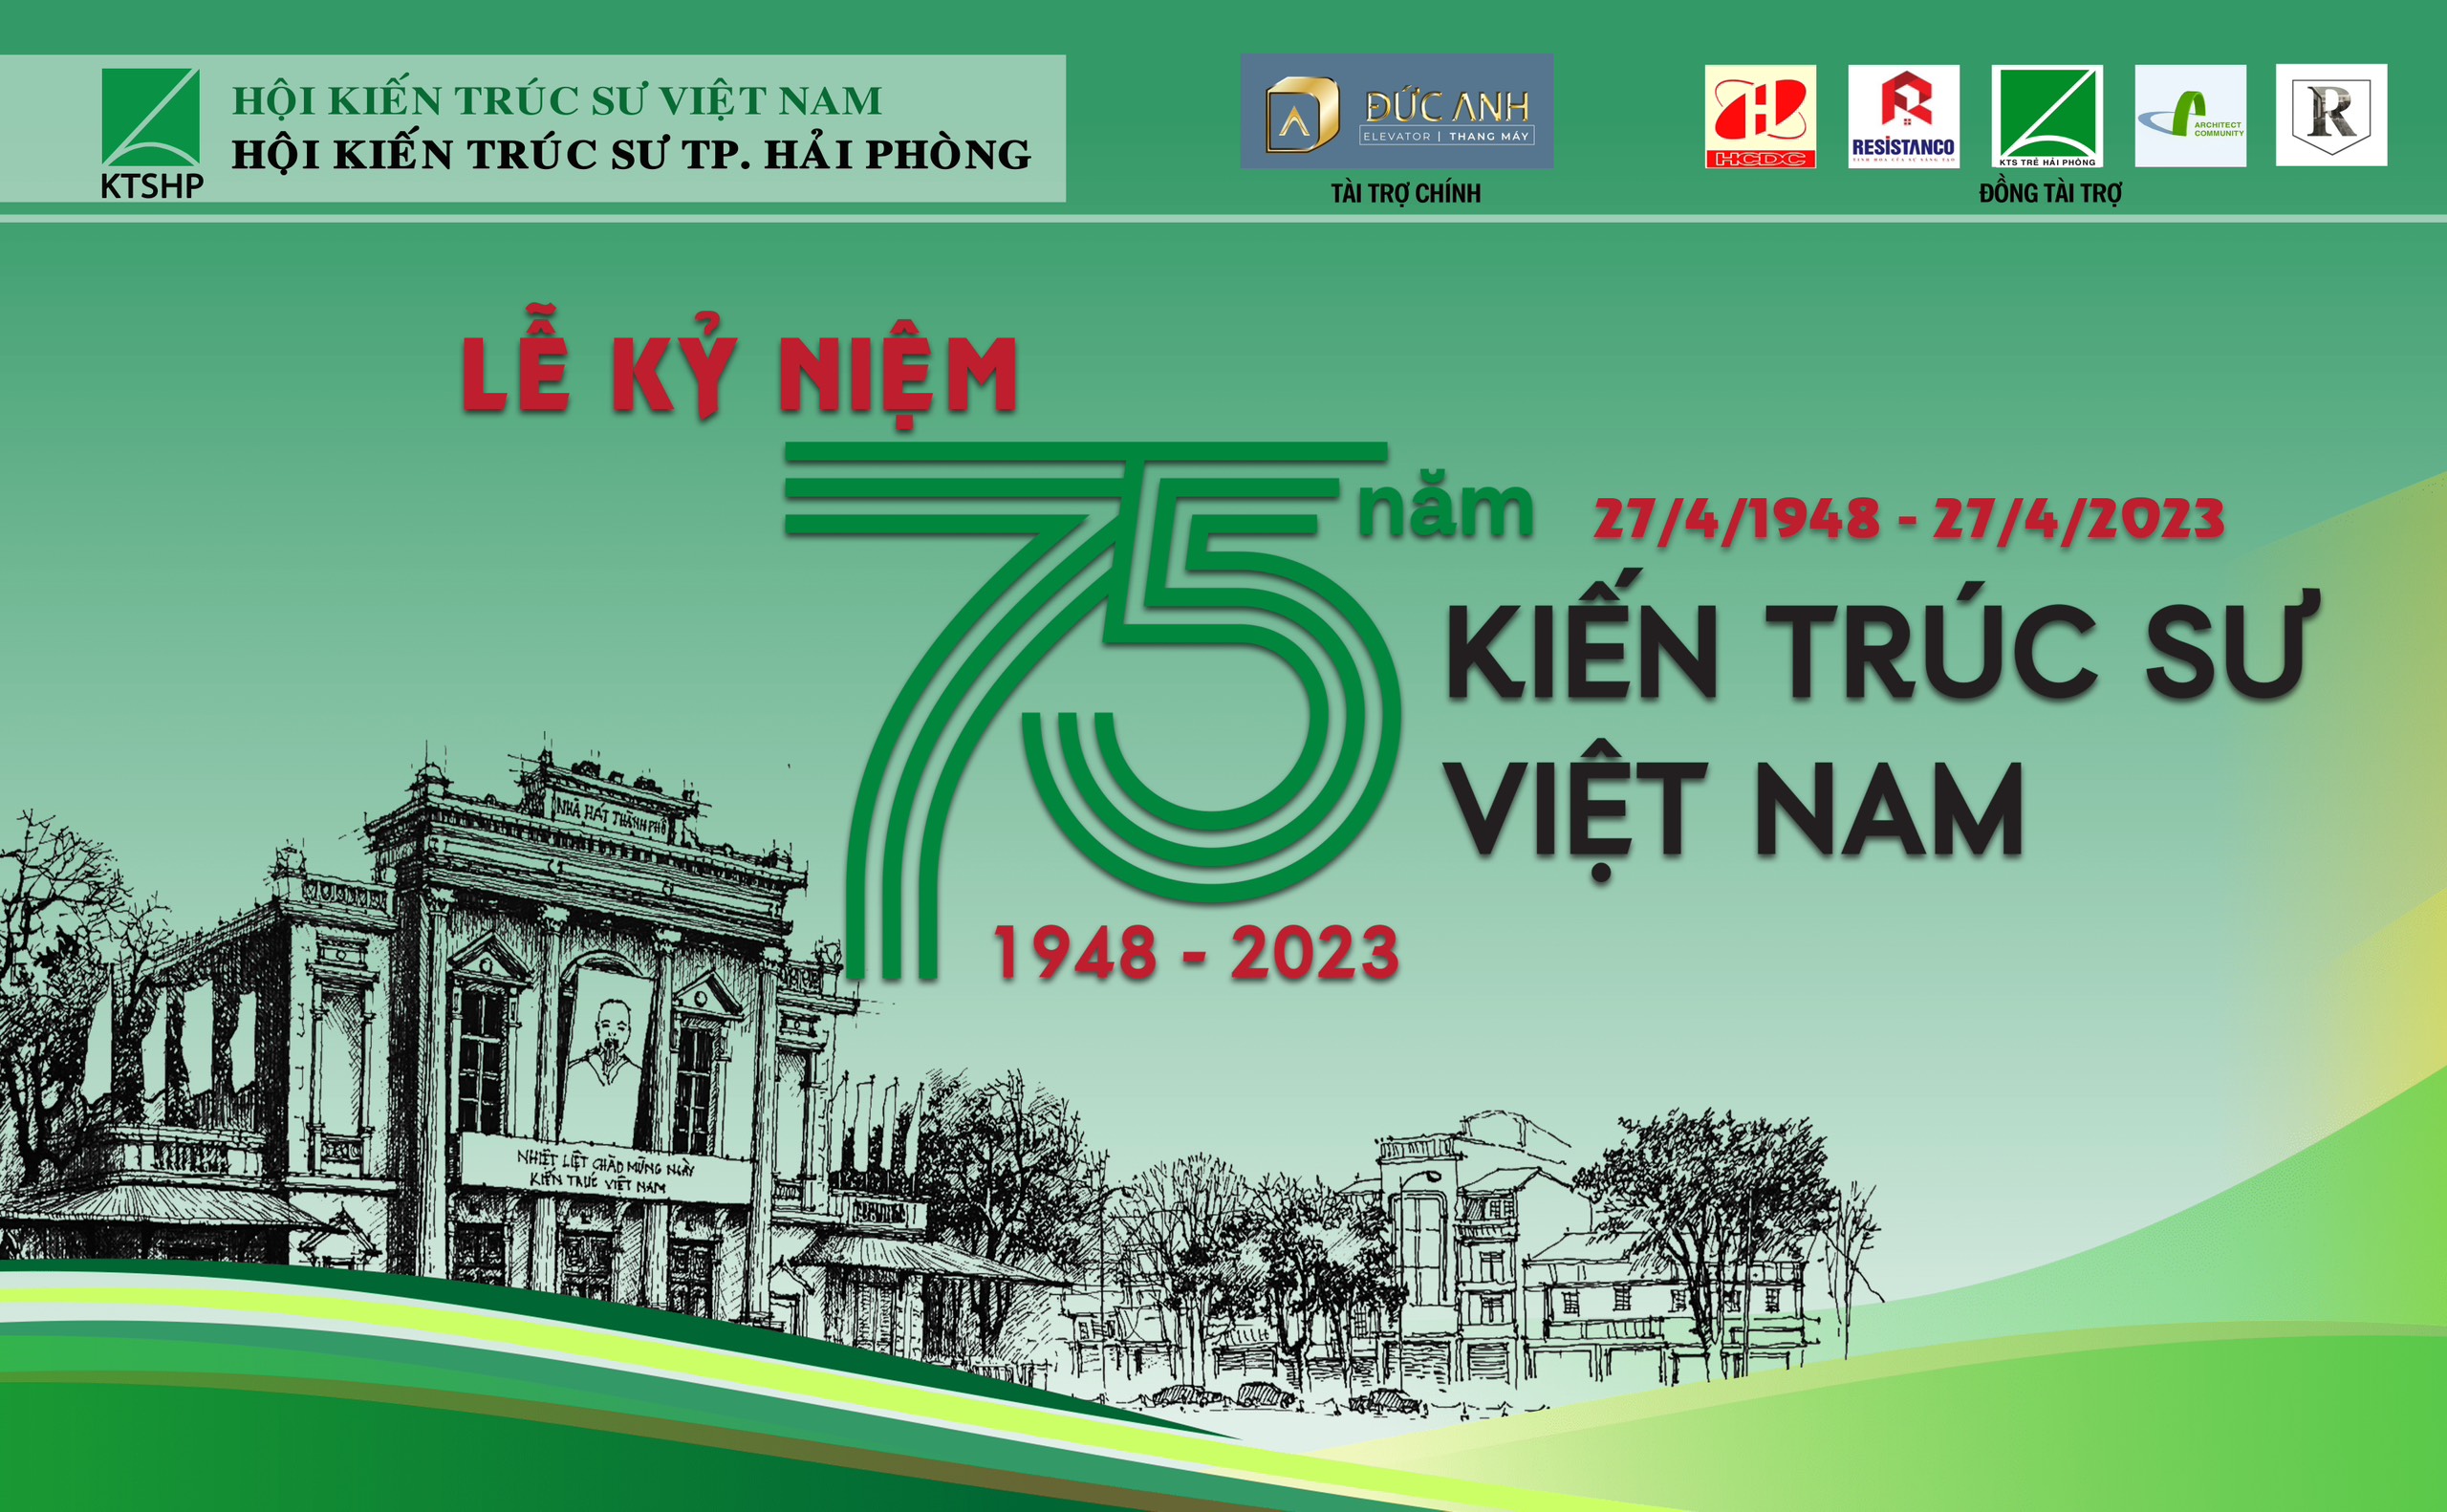 Thang Máy Đức Anh chúc mừng ngày Kiến Trúc Sư Việt Nam (27/04/1948 - 27/04/2023)